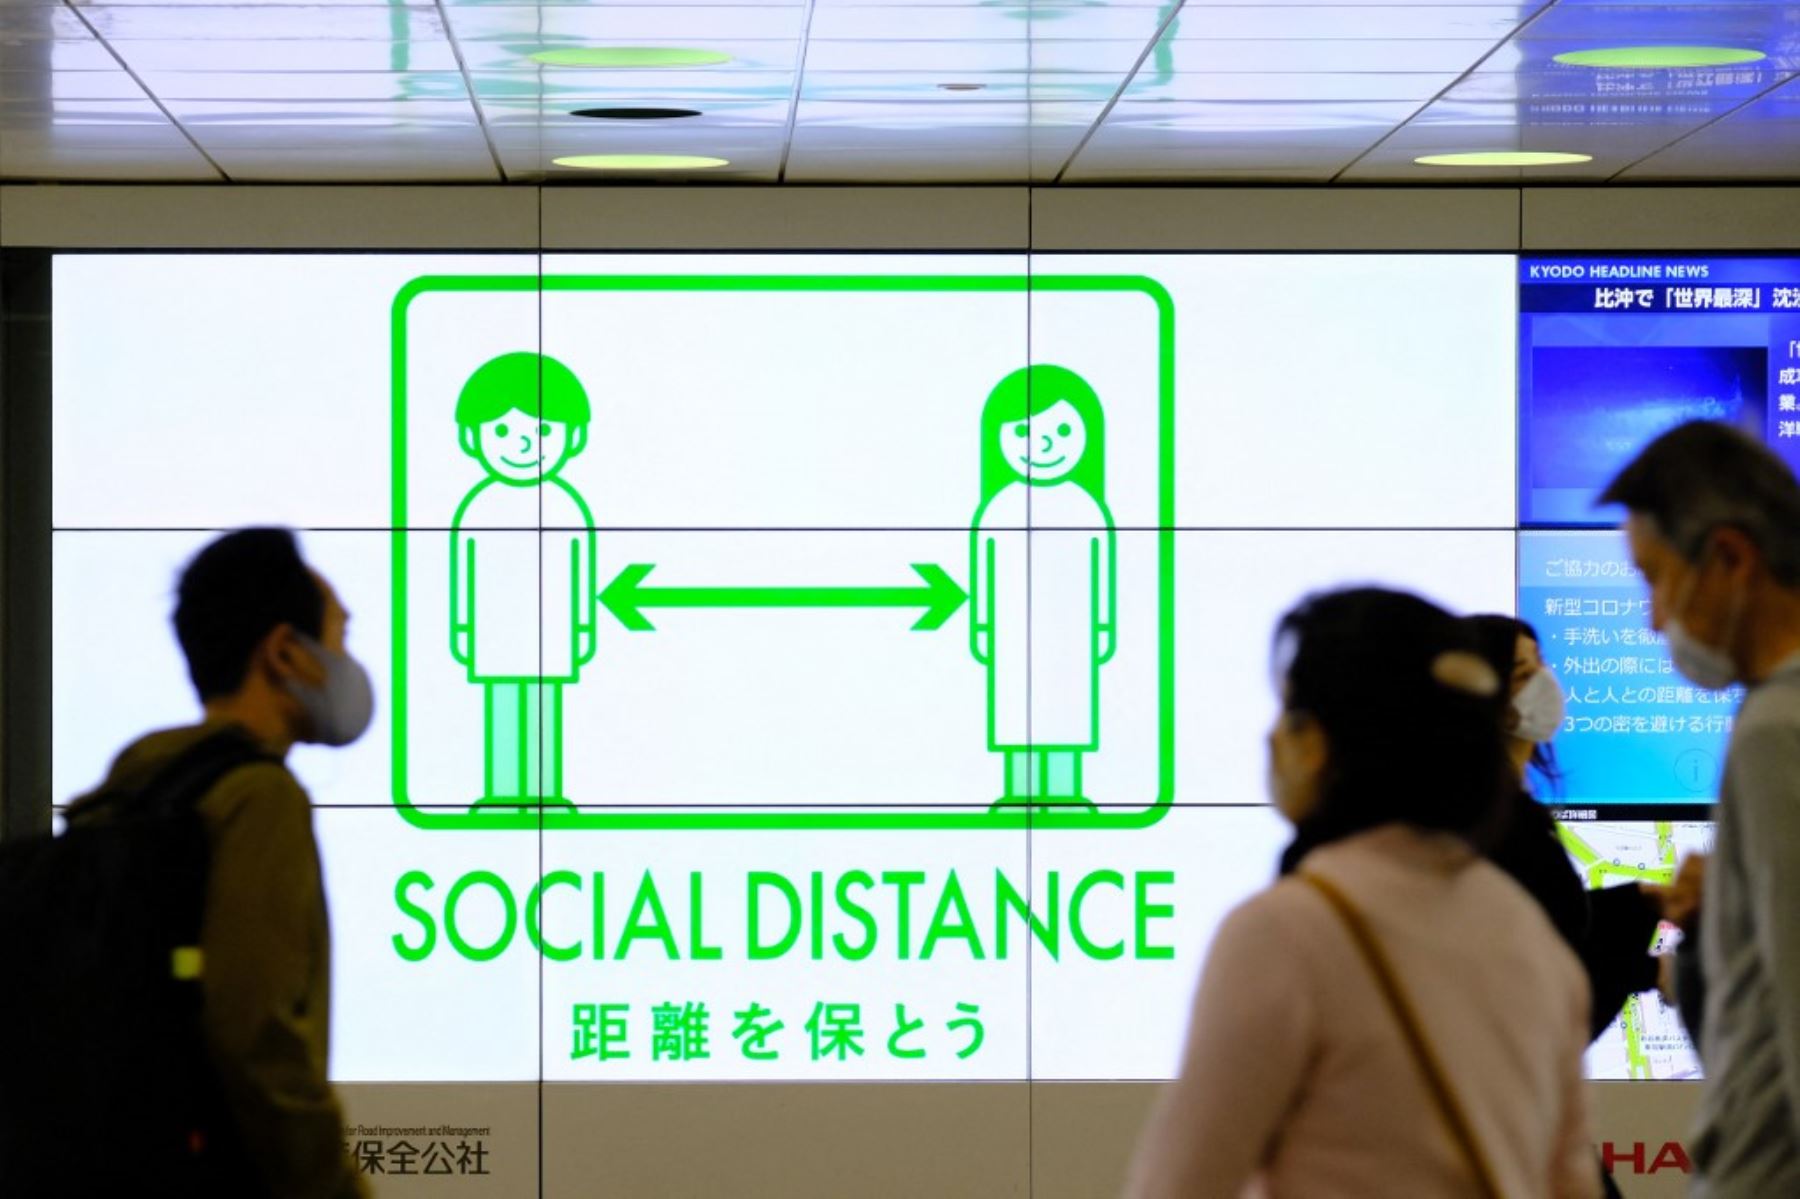 Personas que usan máscaras pasan frente a una exhibición de servicio público que promueve el distanciamiento social en una explanada que conduce a la estación terminal en el distrito Shinjuku de Tokio, bajo las medidas de cuasi-emergencia más recientes en medio de un aumento en los casos de coronavirus covid-19 en país. Foto: AFP